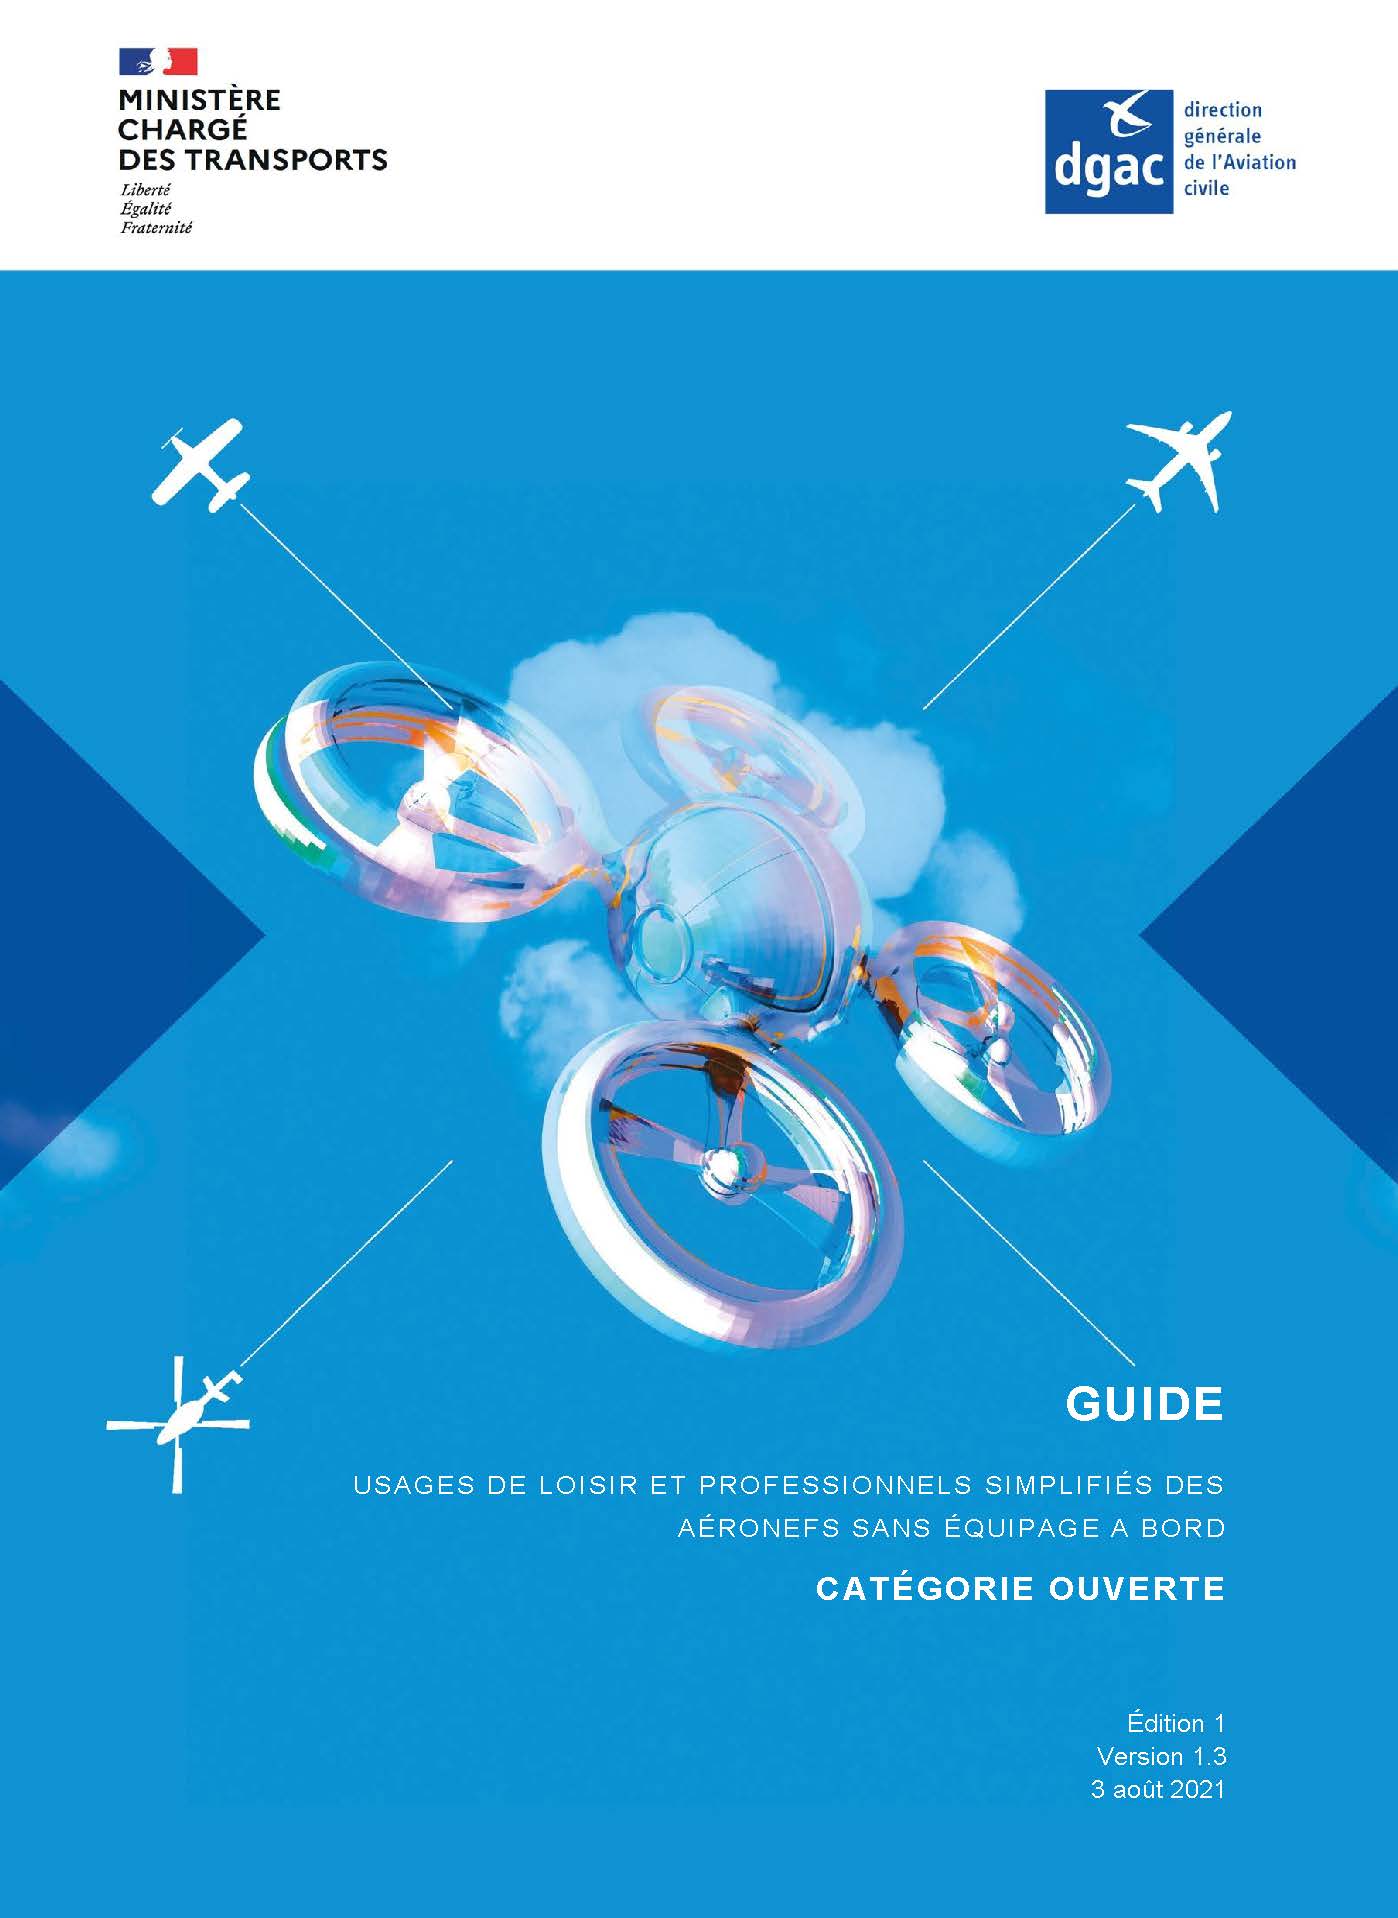 Drones - Guide catégorie Ouverte - publié par la DGAC